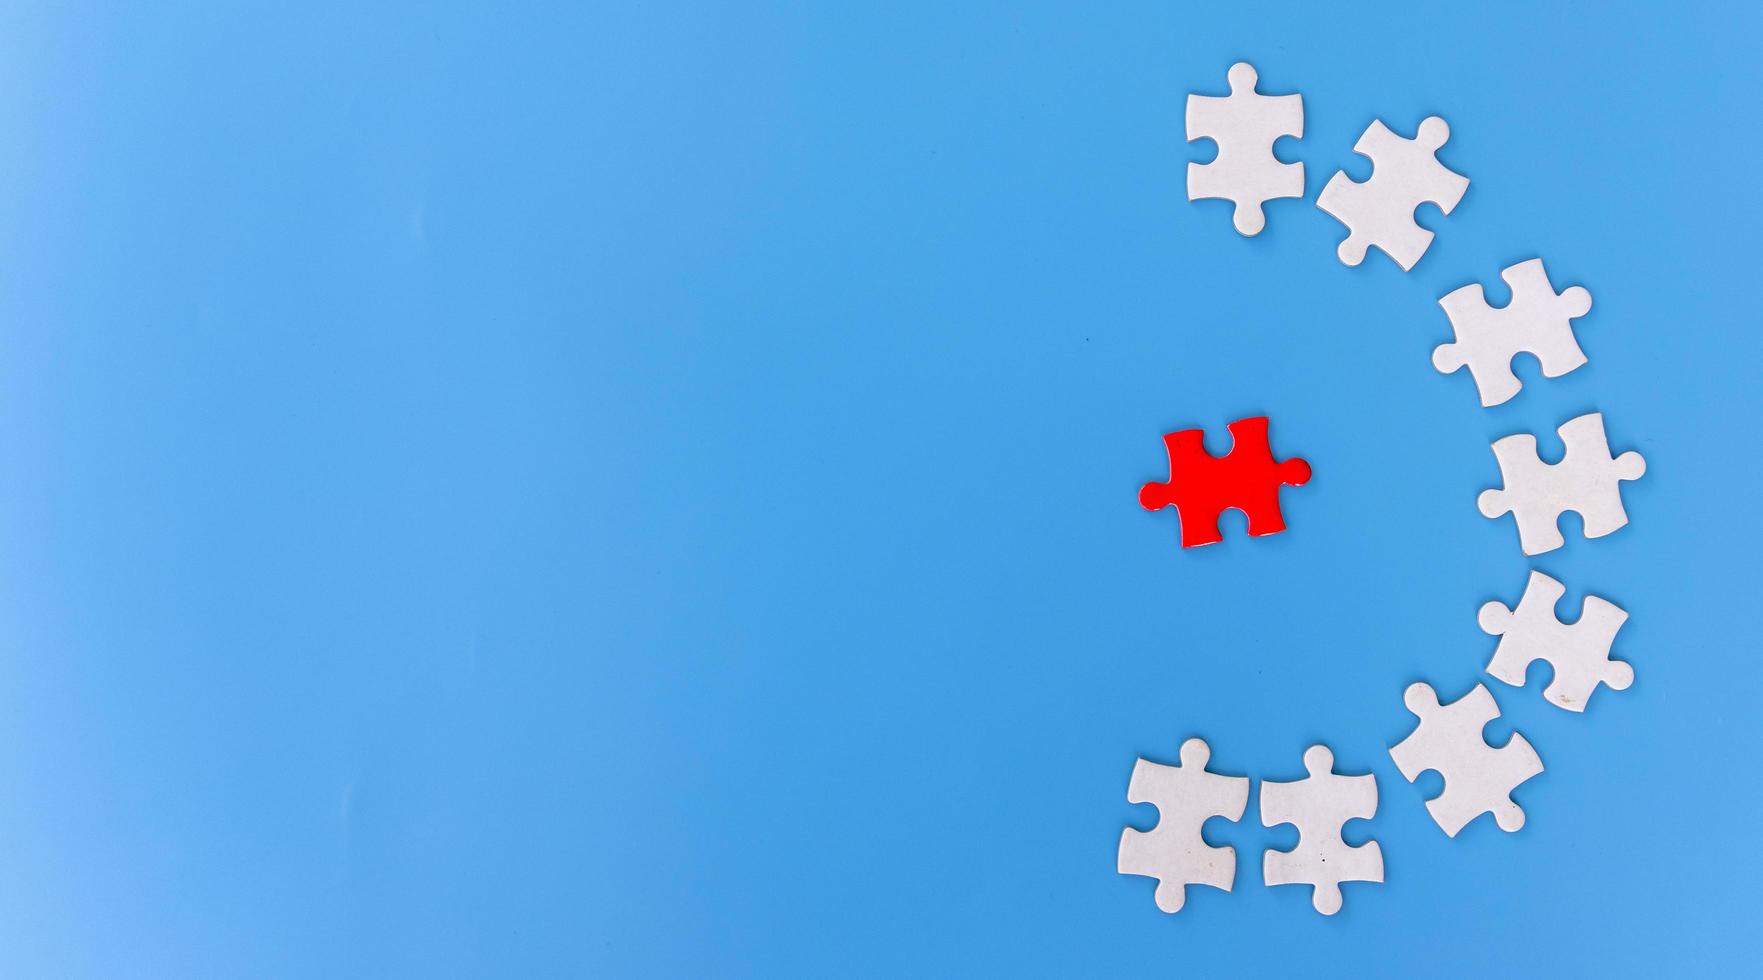 Puzzleteile auf blauem Hintergrund, Team-Business-Konzept foto